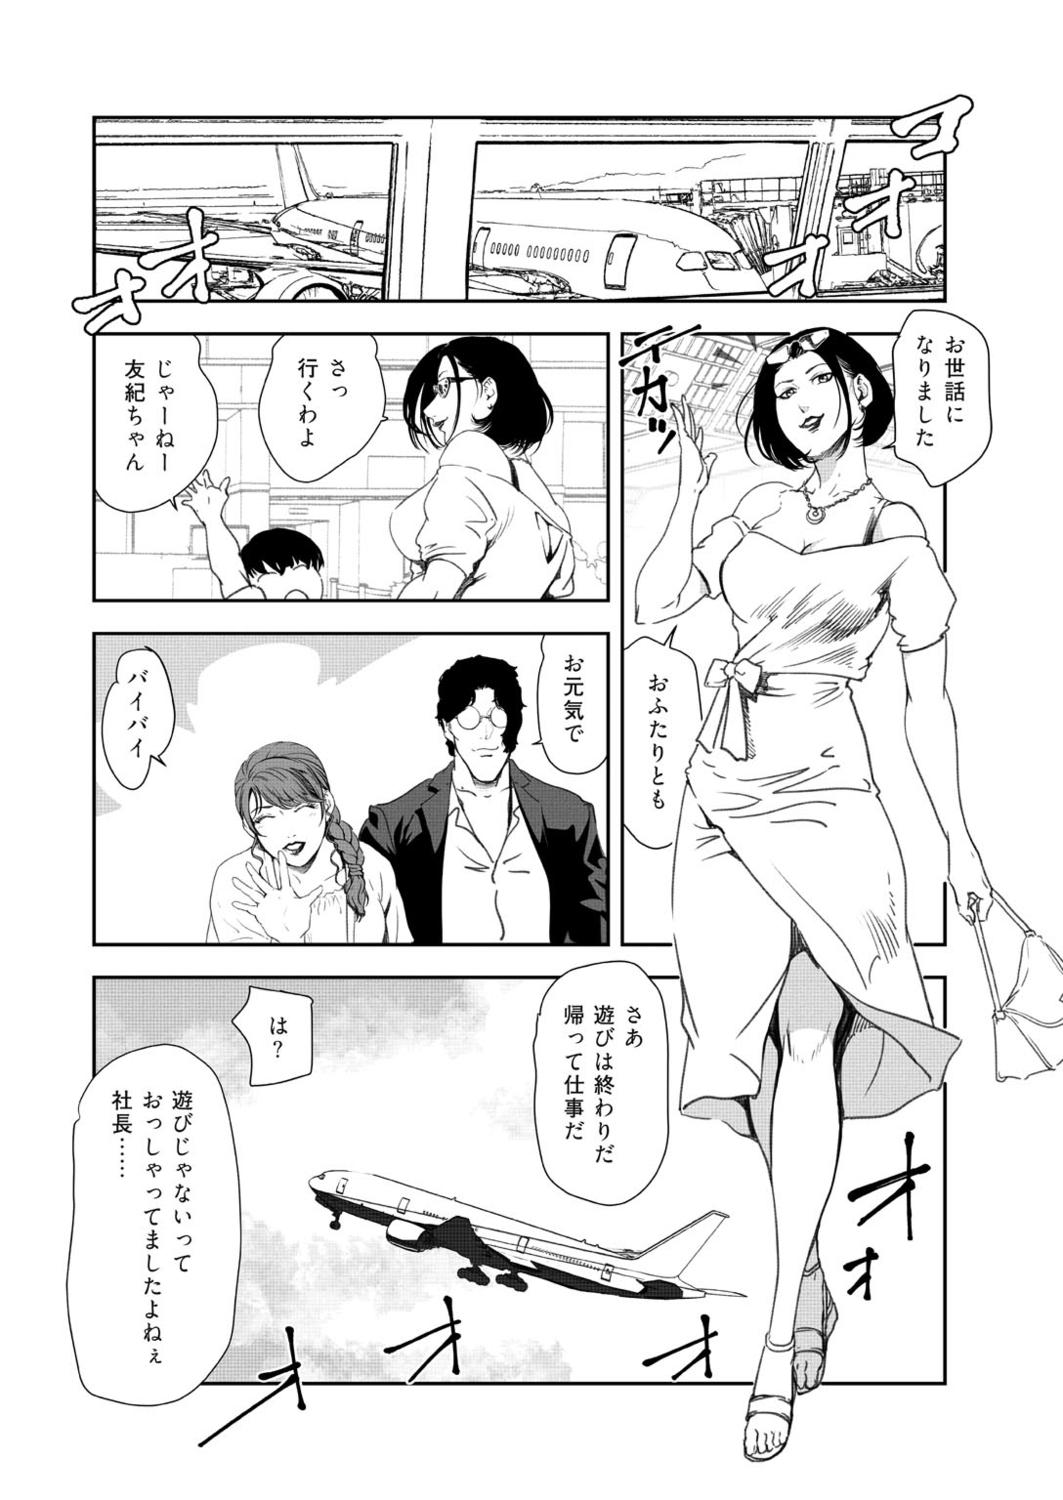 Nasty Free Porn Nikuhisyo Yukiko 41 Sfm - Page 86